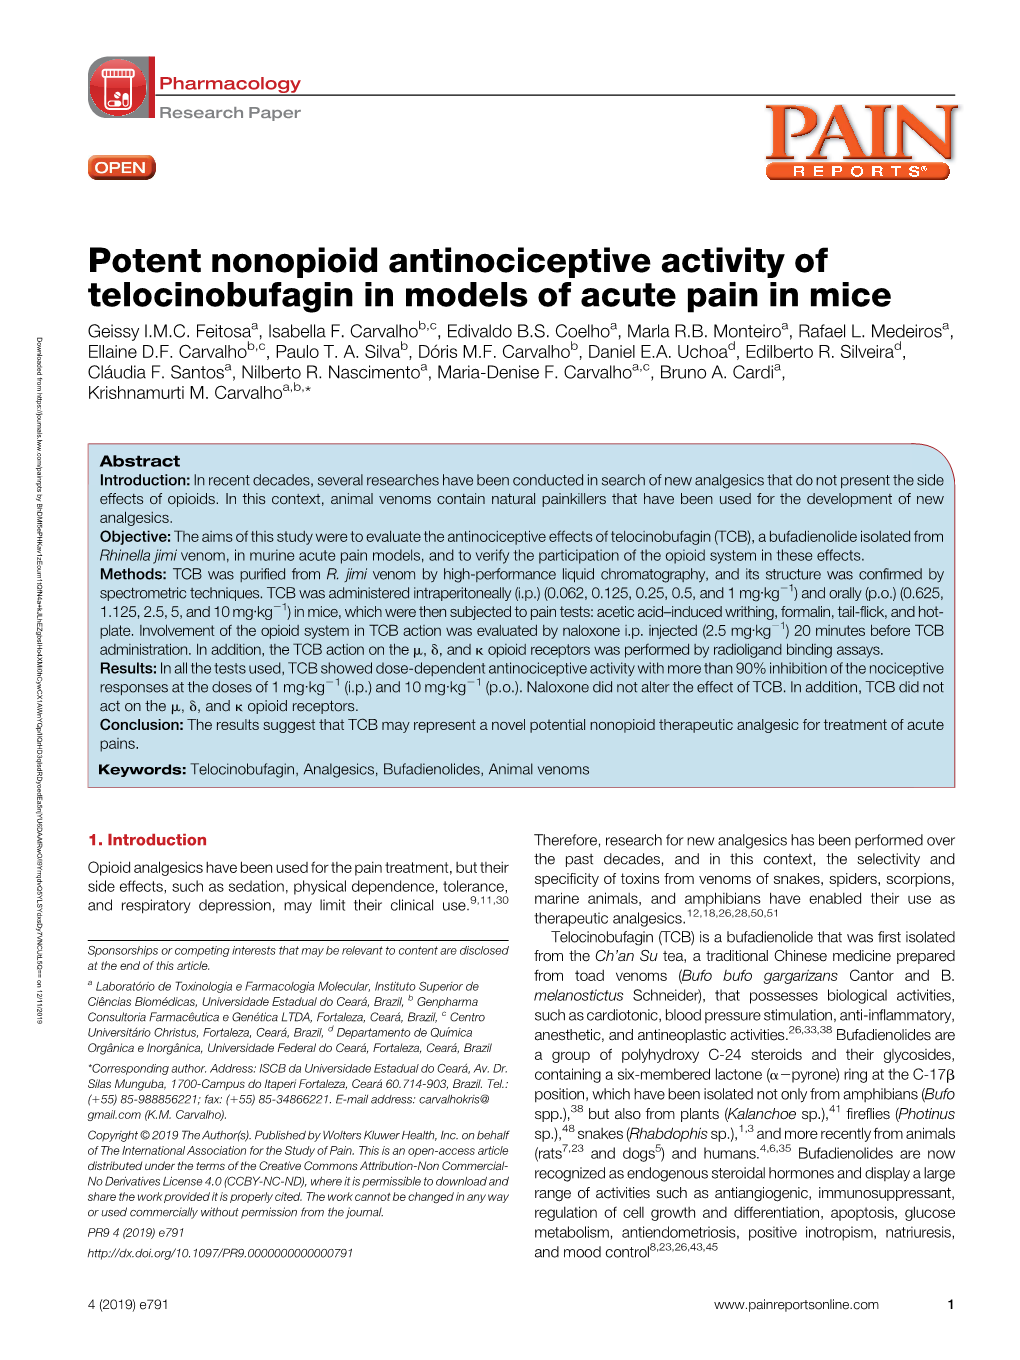 Potent Nonopioid Antinociceptive Activity of Telocinobufagin in Models